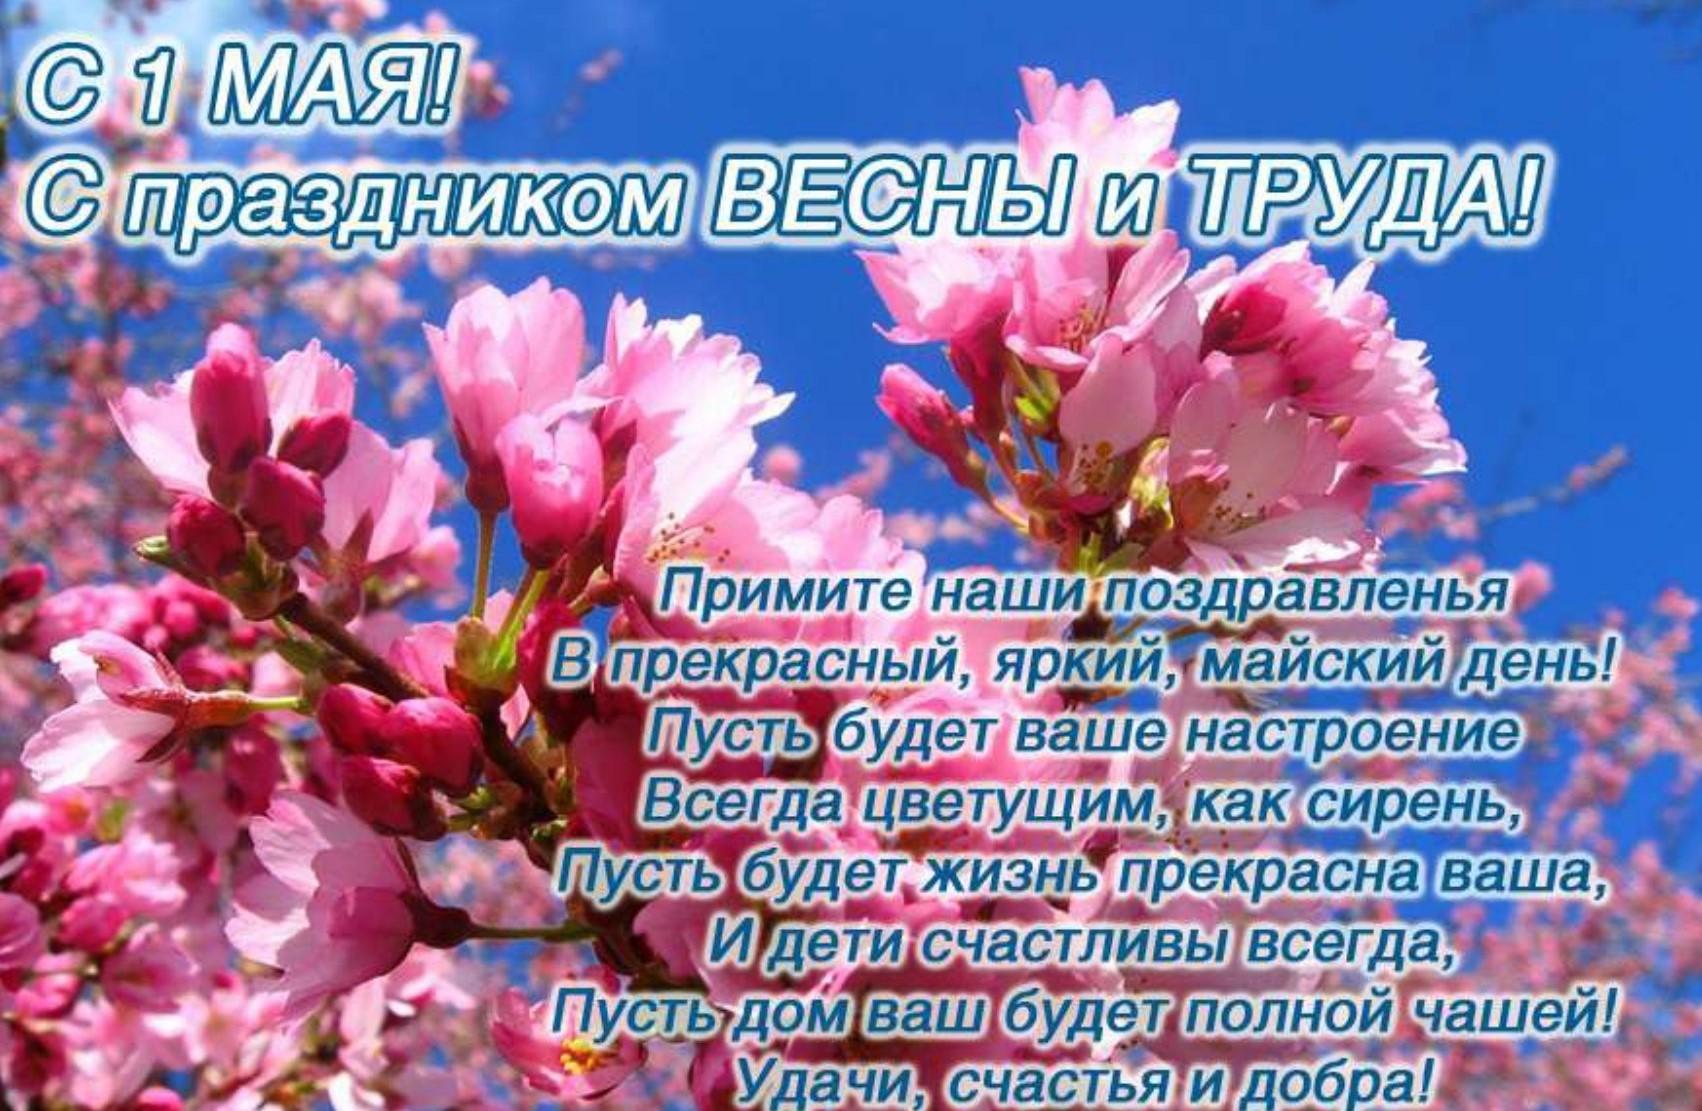 1 Мая – Праздник Весны и Труда! - Рязанская городская муниципальная  энергосбытовая компания (РГМЭК)